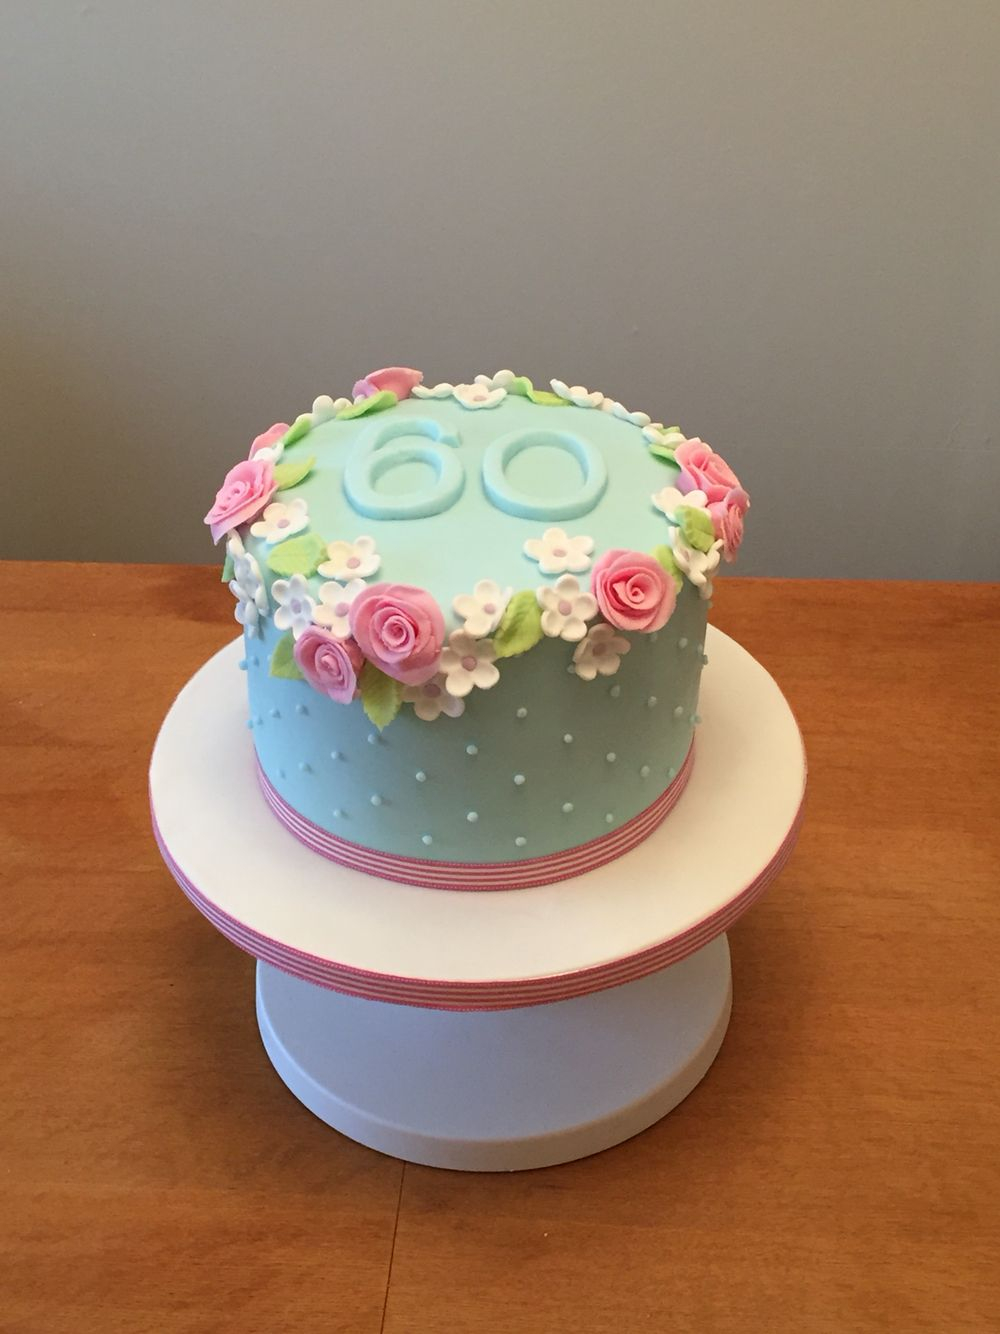 Simple Birthday Cakes 60th Birthday Cake Flowery And Simple Cakes Pinte